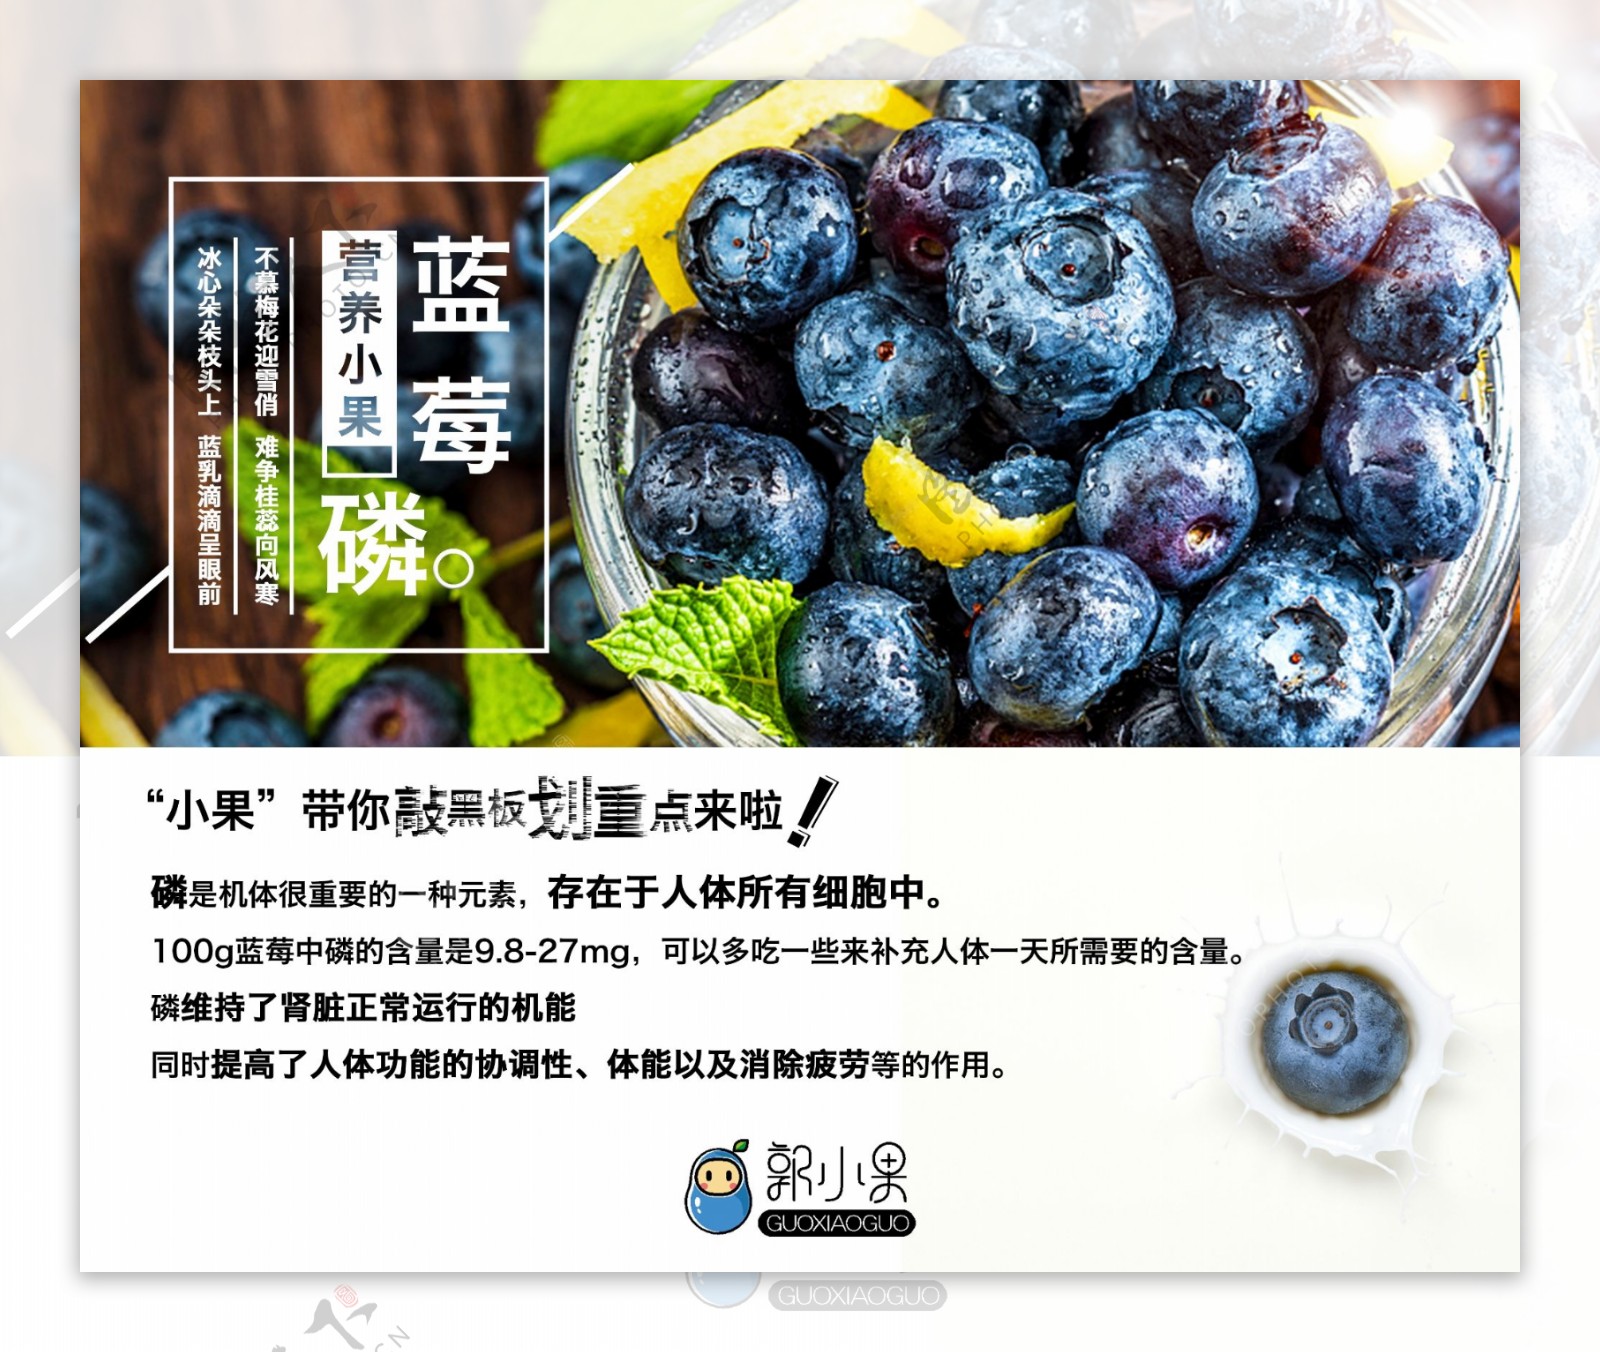 蓝莓海报